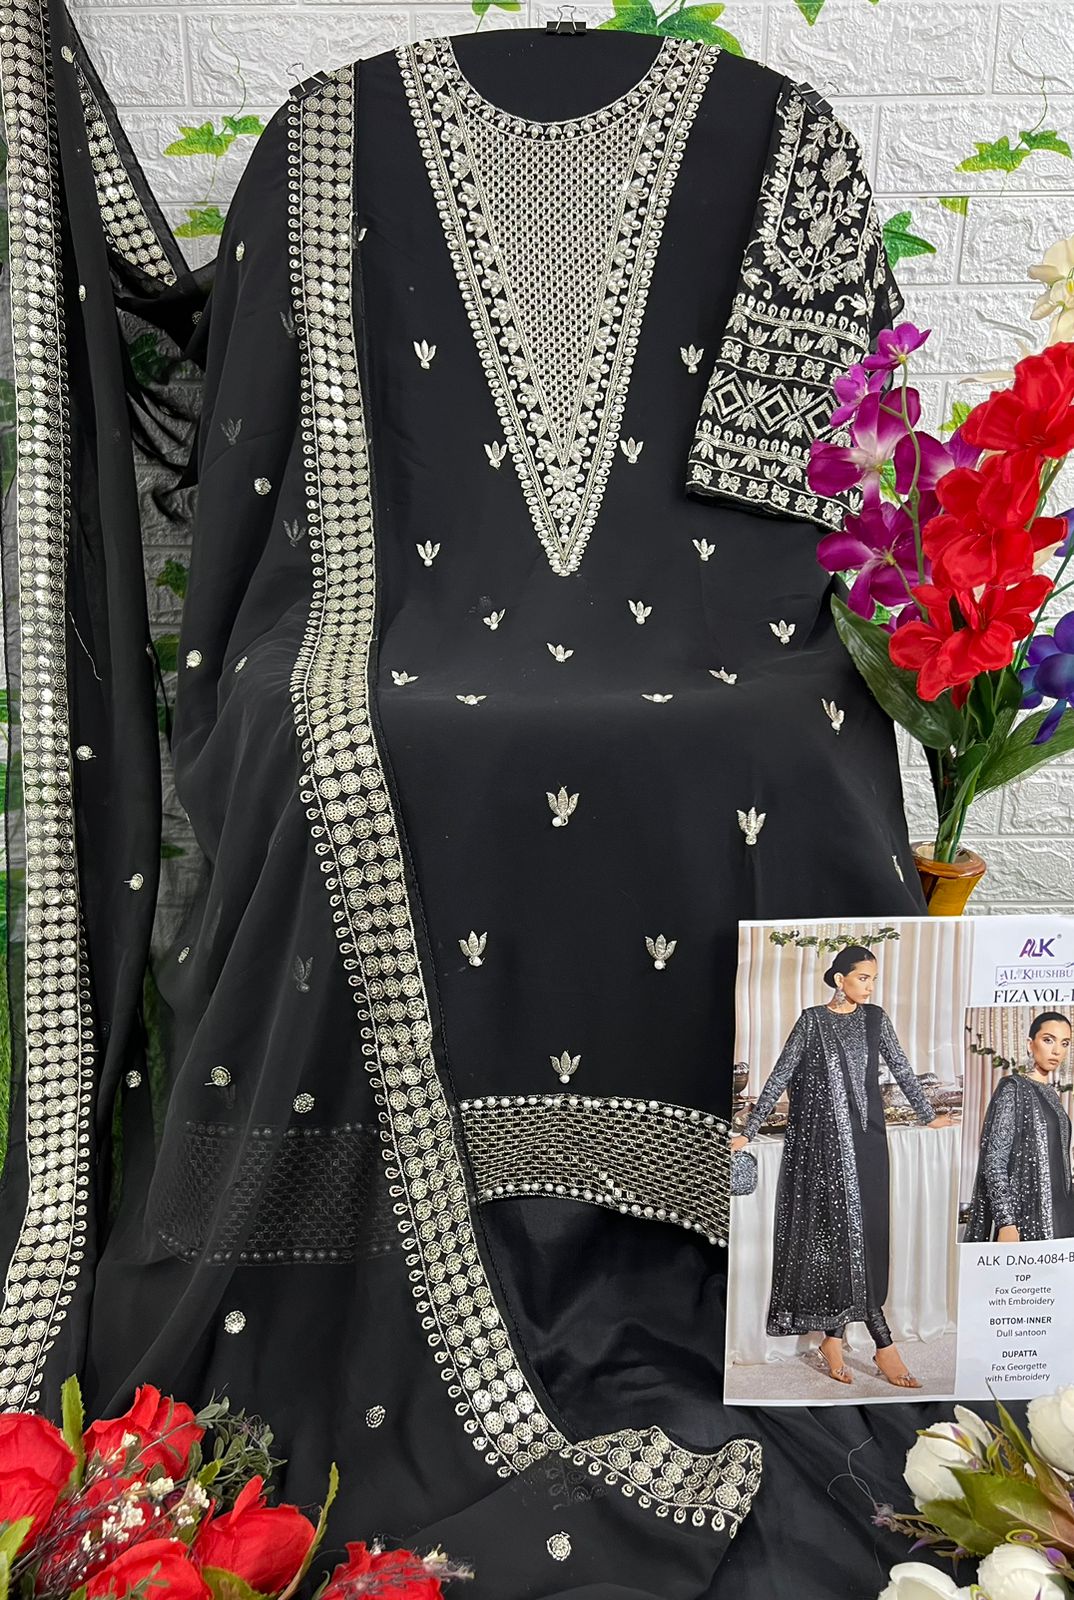 al khushbu fiza vol 1 d no 4084 a B C Georgette decent look salwar suit catalog